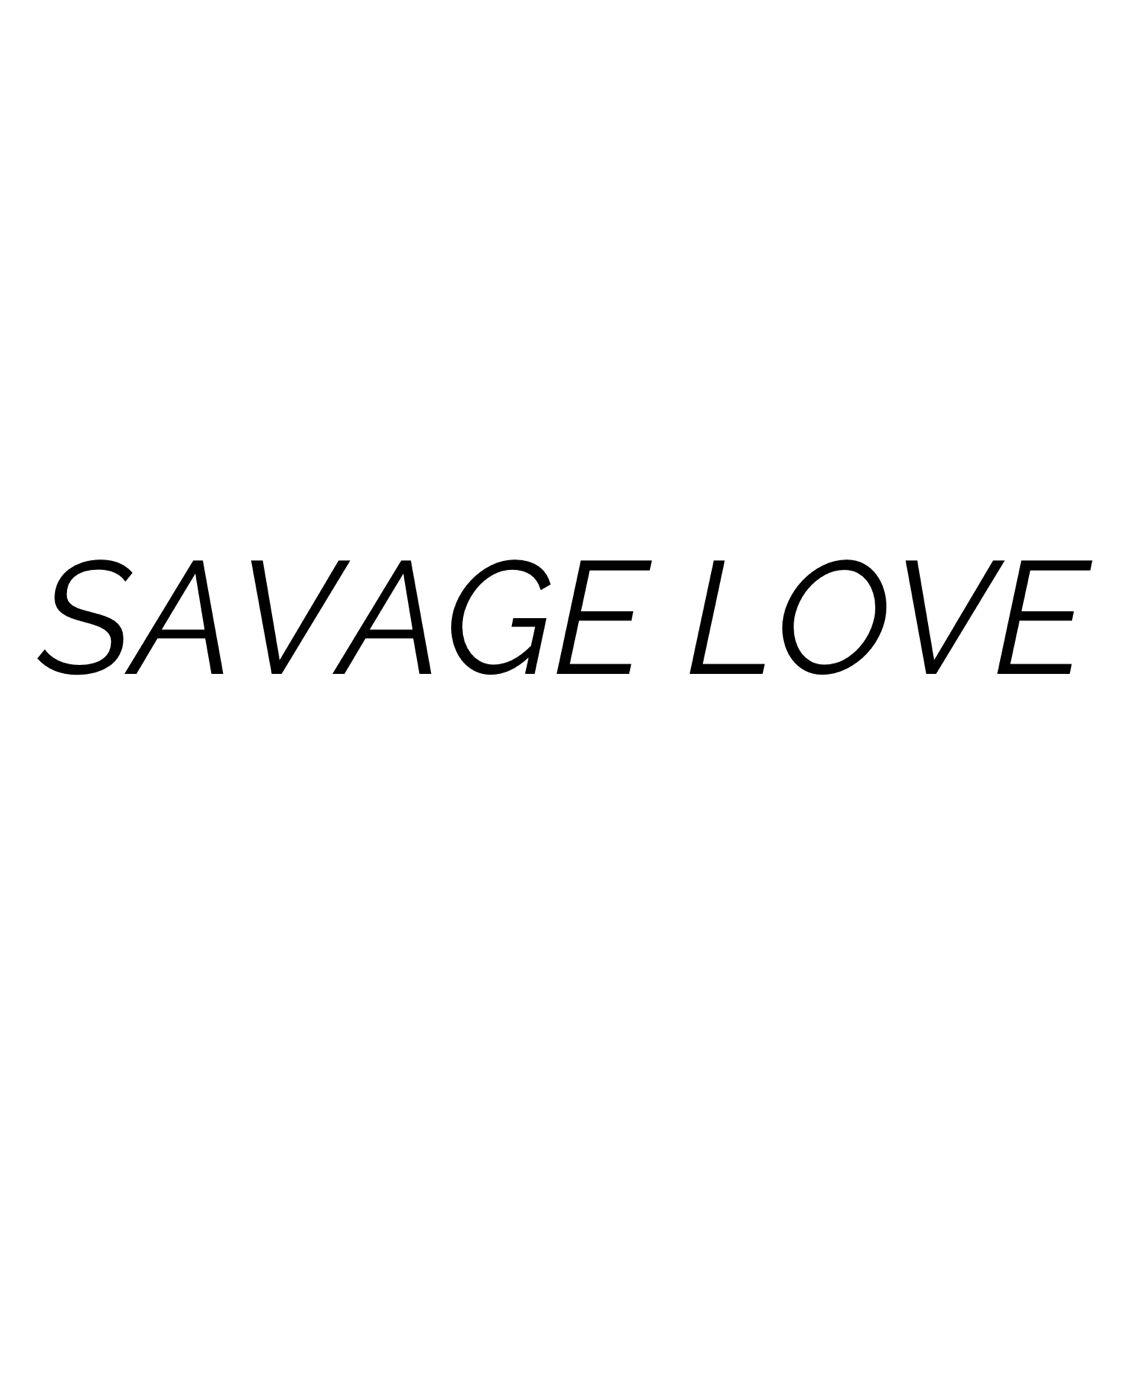 SAVAGE LOVE